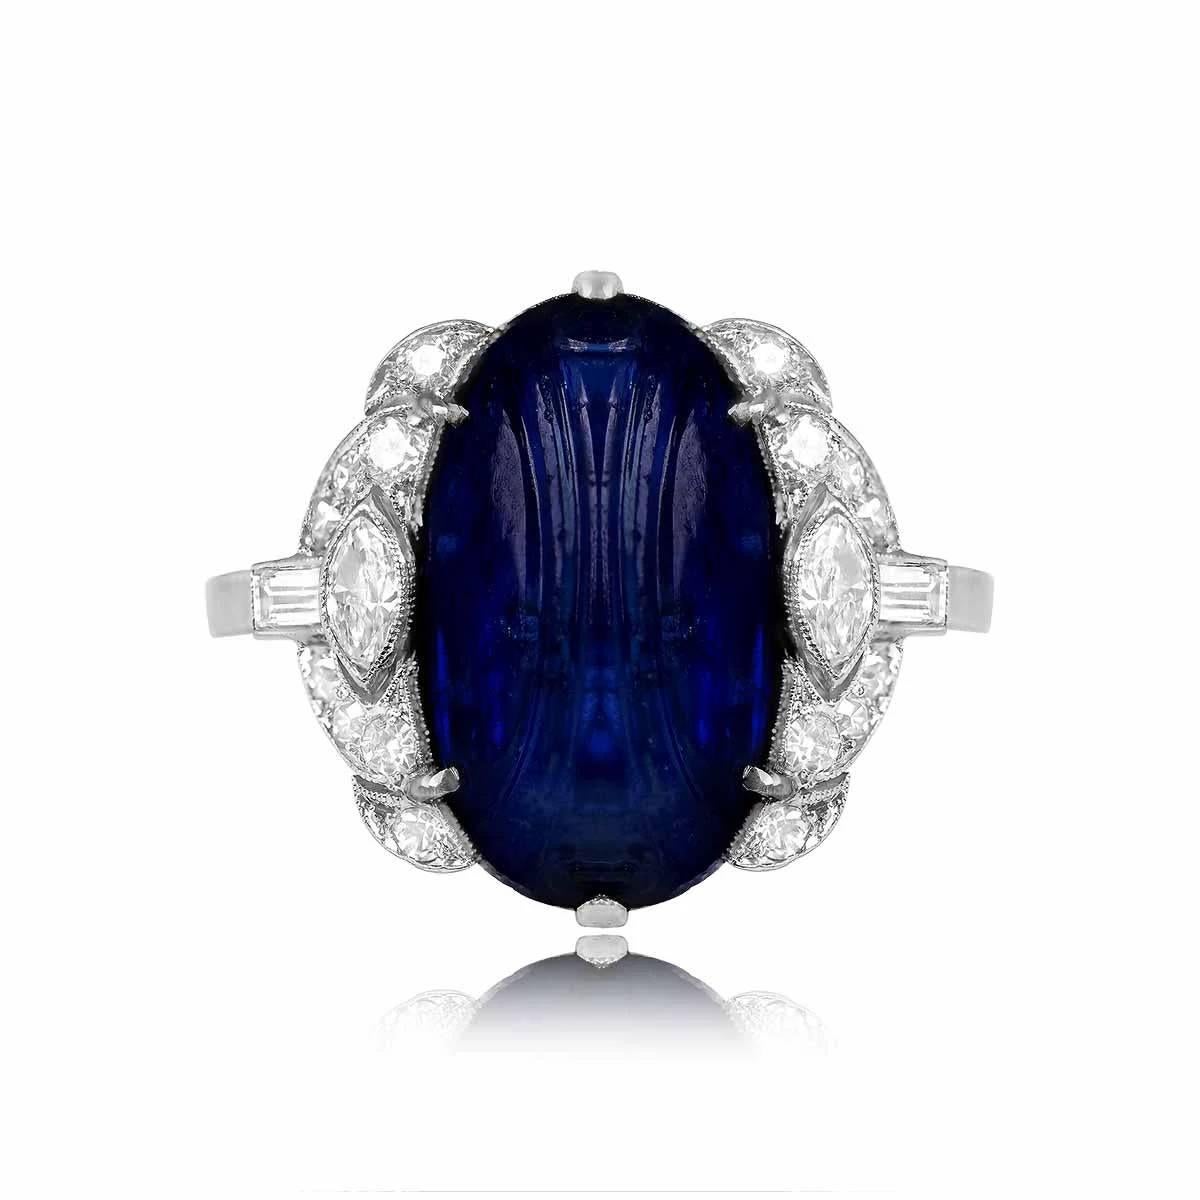 Dieser exquisite Art-Déco-Ring präsentiert einen 8,64-karätigen natürlichen Saphir mit Cabochon-Schliff aus Burmese als Herzstück. Um den Saphir herum sind schillernde Diamanten im Einzel-, Marquise- und Baguetteschliff angeordnet. Dieser antike